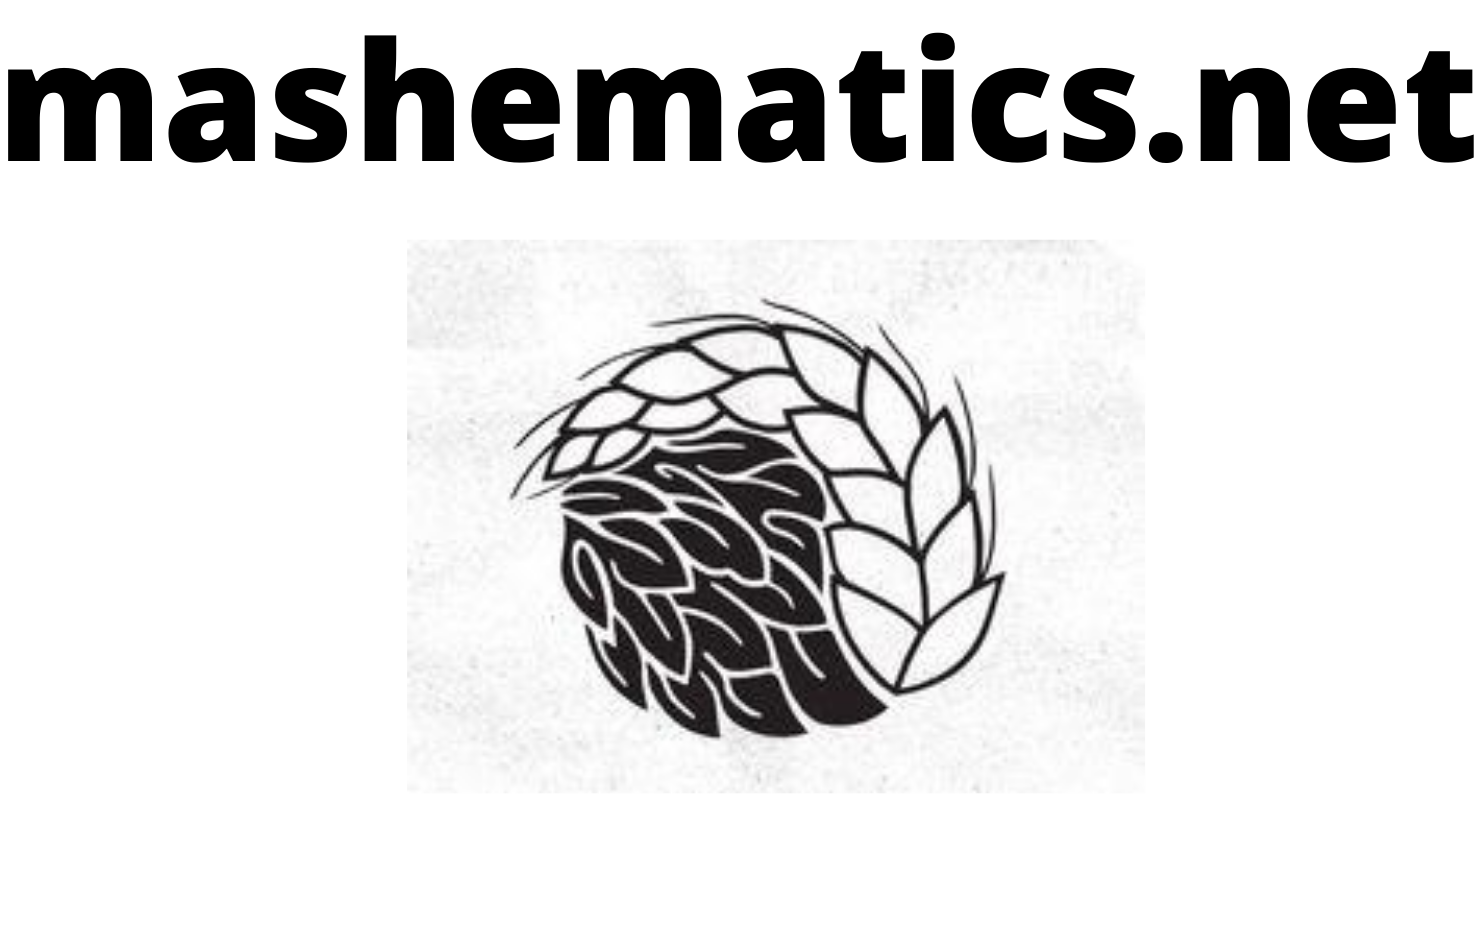 Mashematics